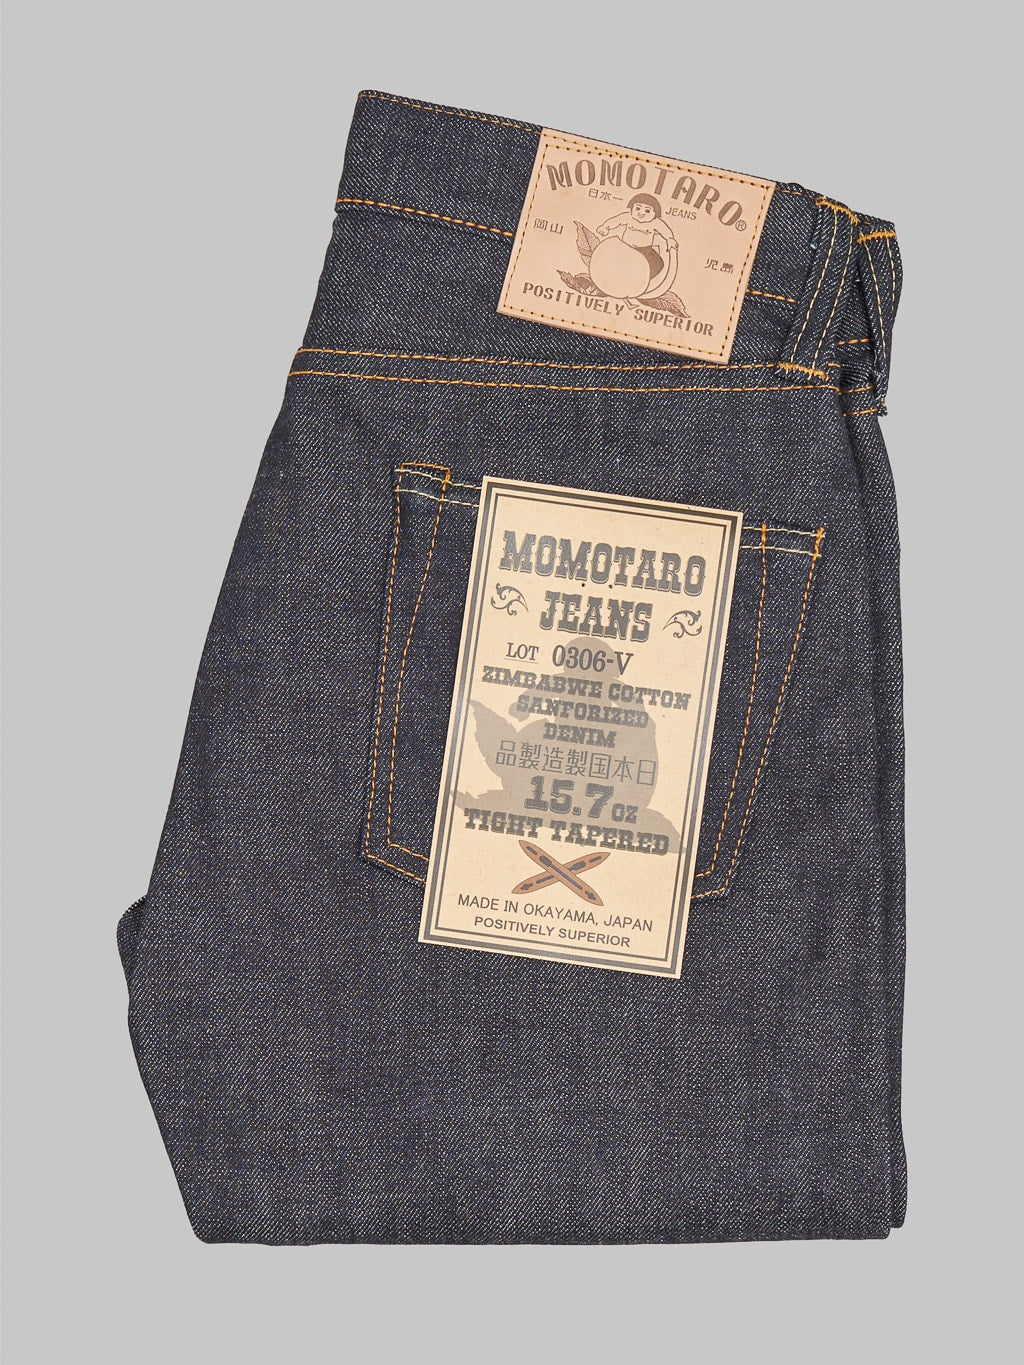 Momotaro 0306 V Tight Tapered Jeans made in kojima